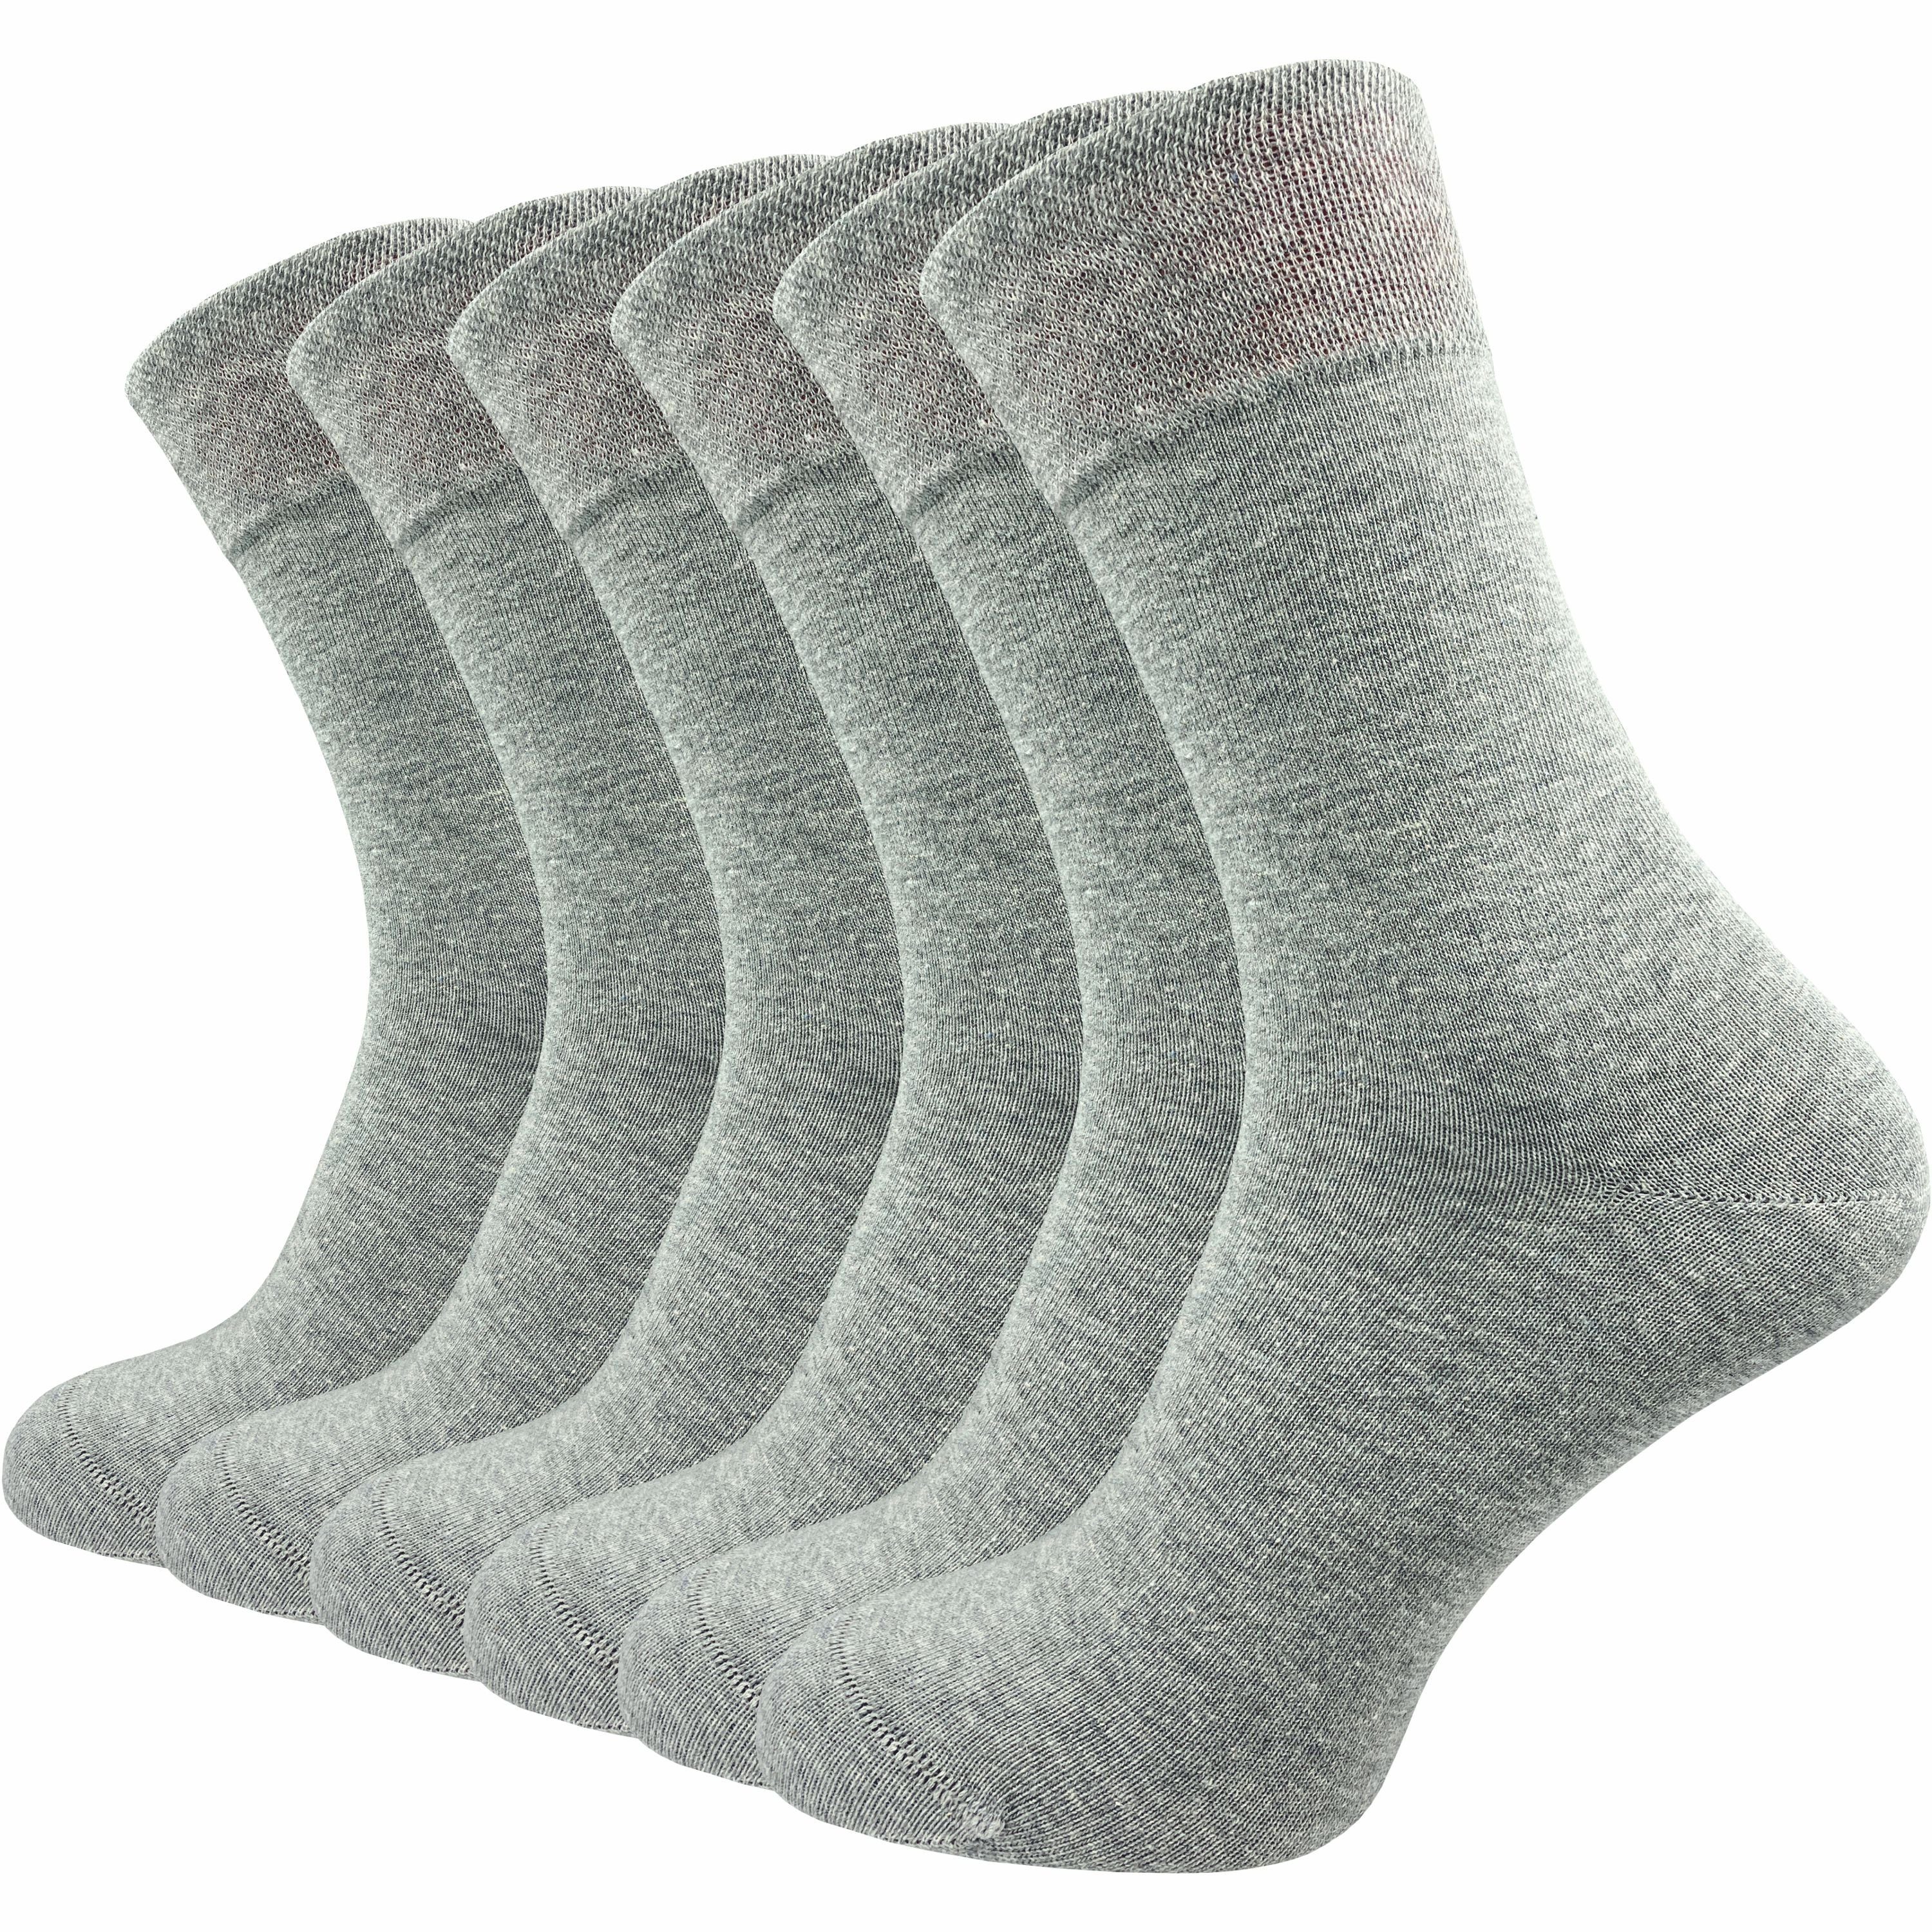 GAWILO Socken für Damen & Herren - Premium Komfortbund ohne drückende Naht (6 Paar) schwarz, grau & blau - aus hochwertiger, doppelt gekämmter Baumwolle hellgrau